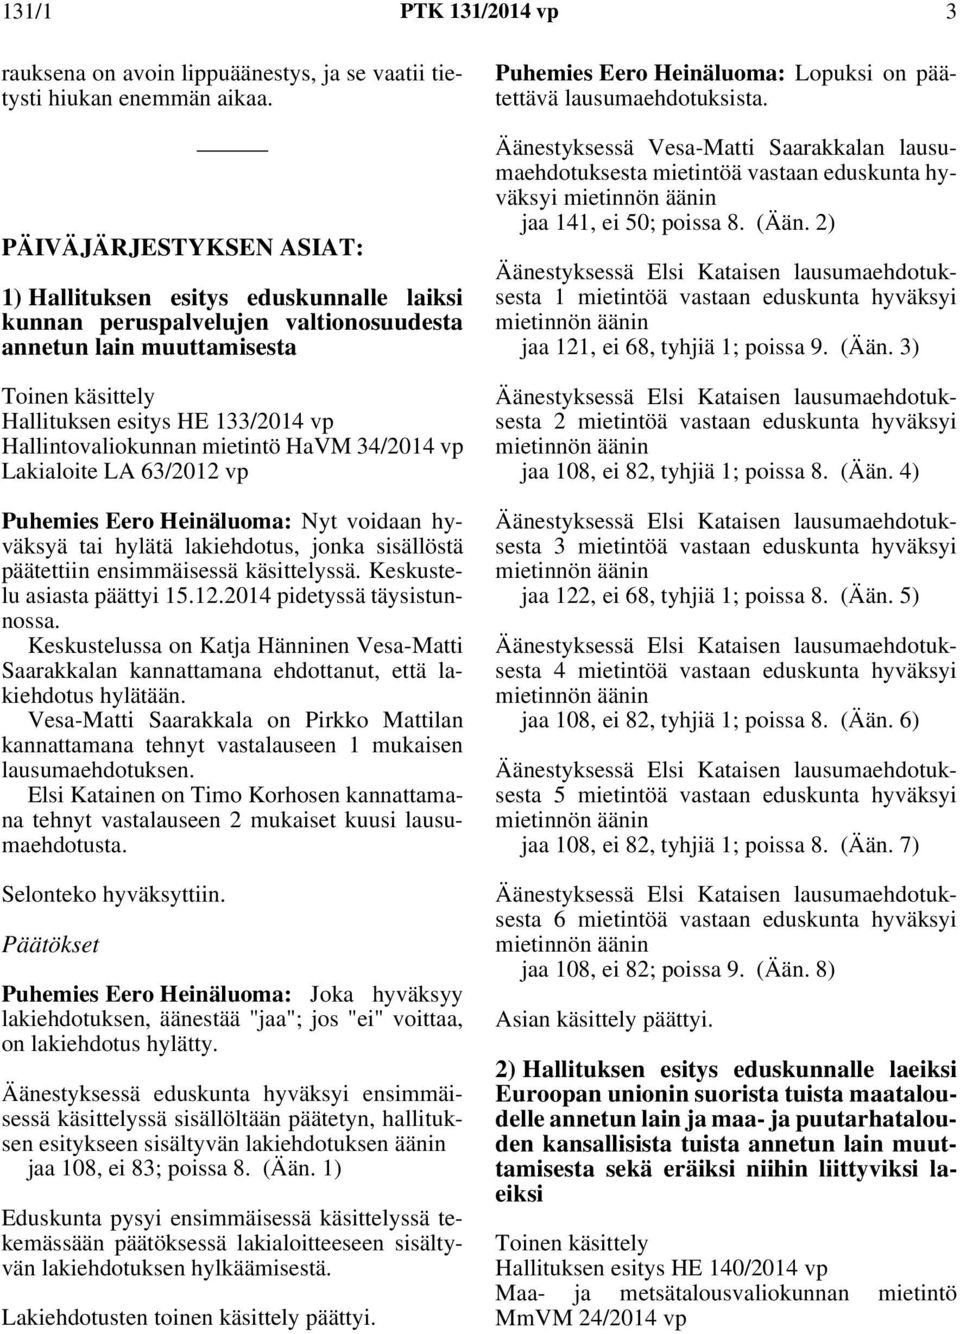 Hallintovaliokunnan mietintö HaVM 34/2014 vp Lakialoite LA 63/2012 vp Puhemies Eero Heinäluoma: Nyt voidaan hyväksyä tai hylätä lakiehdotus, jonka sisällöstä päätettiin ensimmäisessä käsittelyssä.